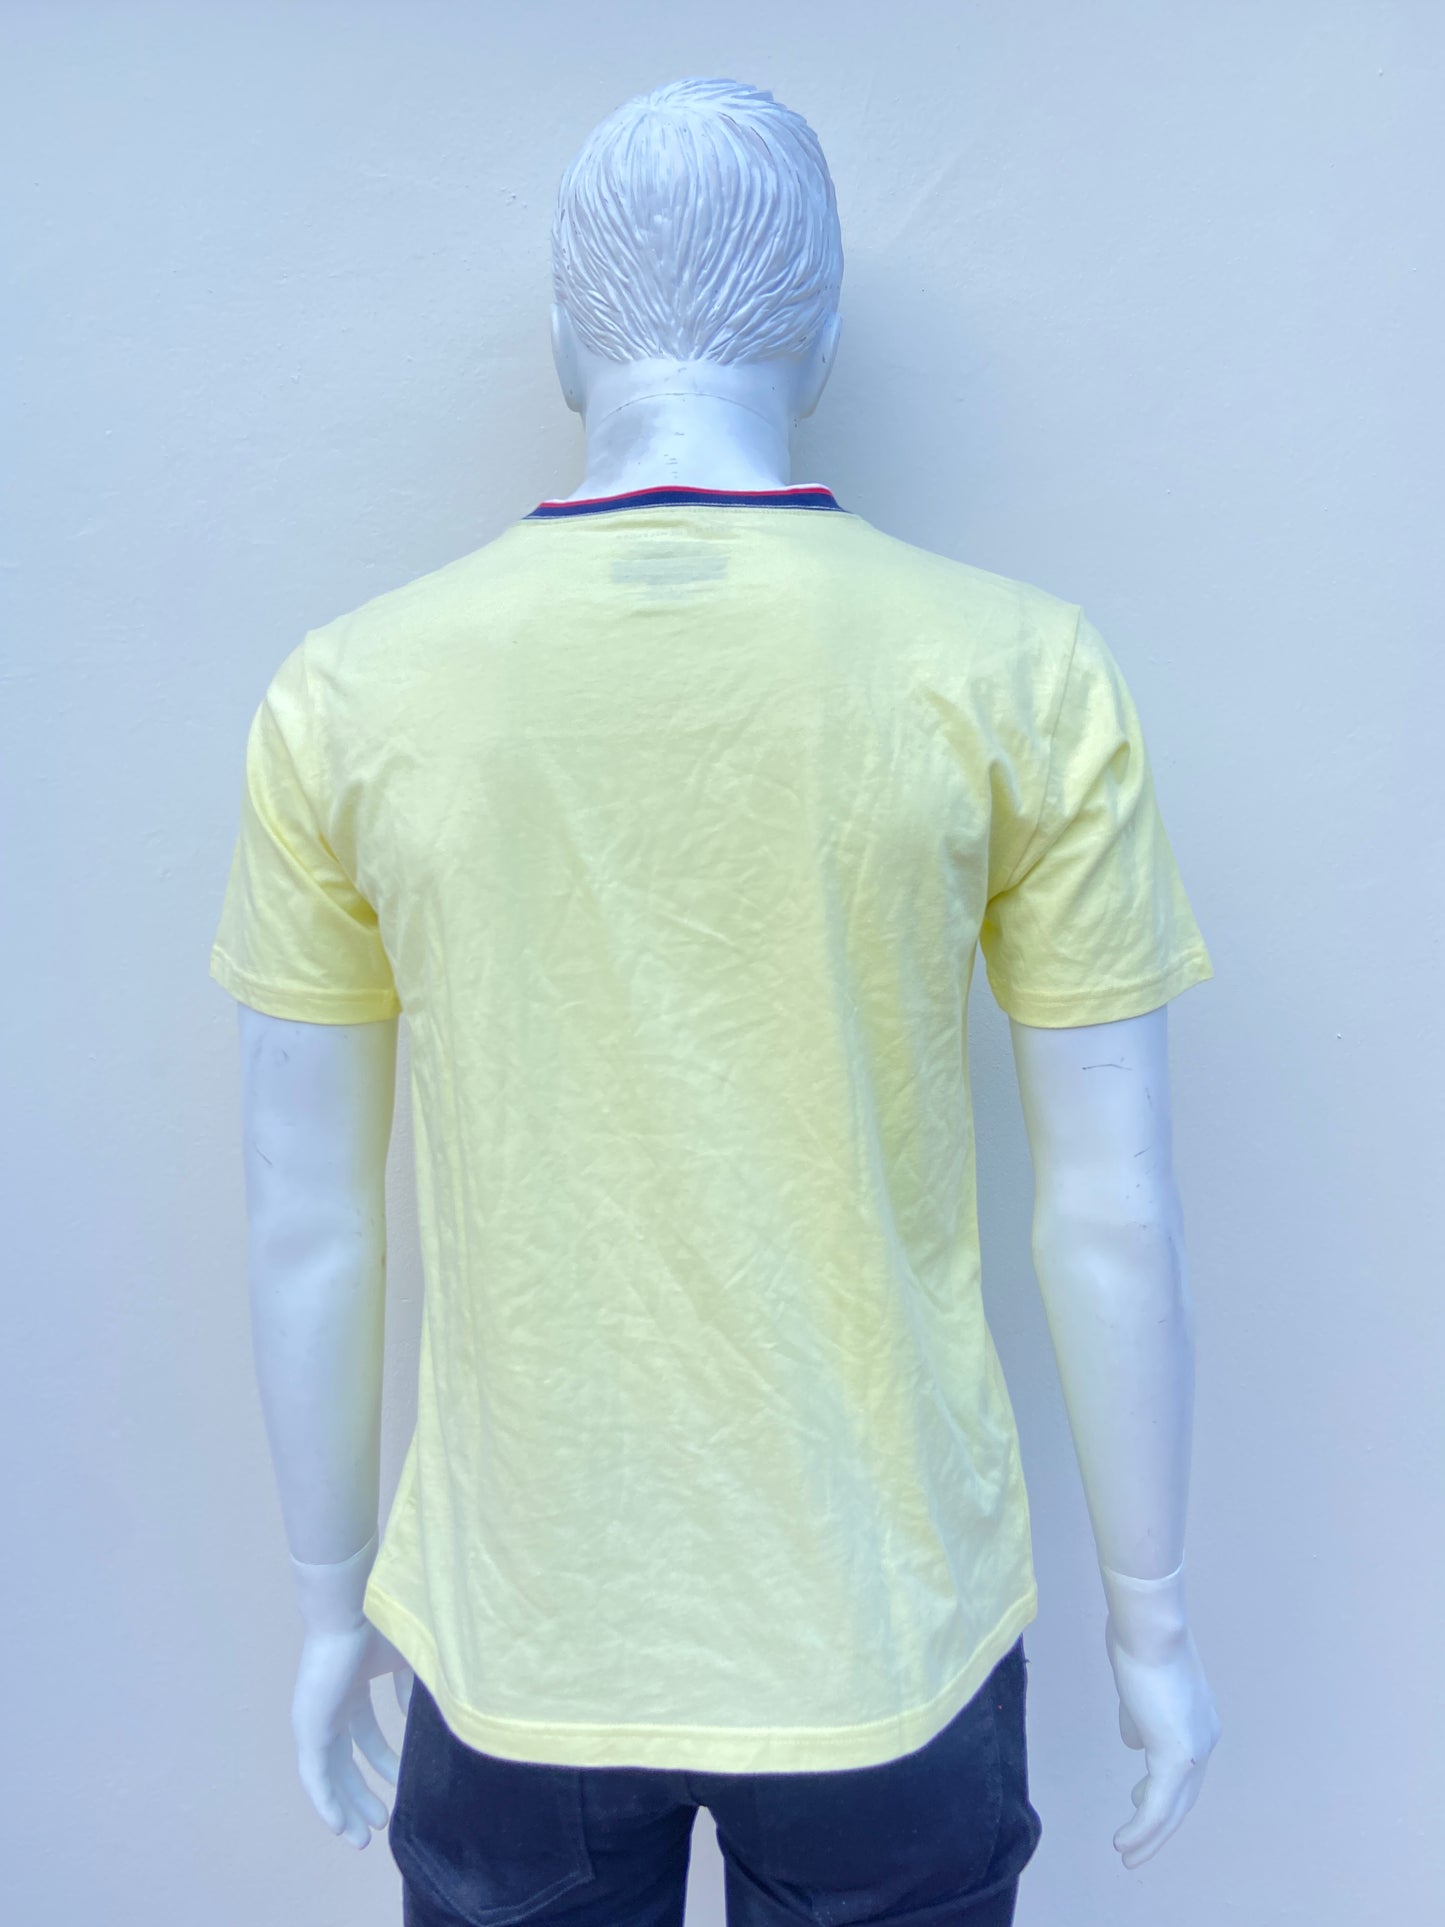 T-shirt Tommy Hilfiger Amarillo claro con logotipo de la marca al lado y cuello en color azul, rojo y blanco.